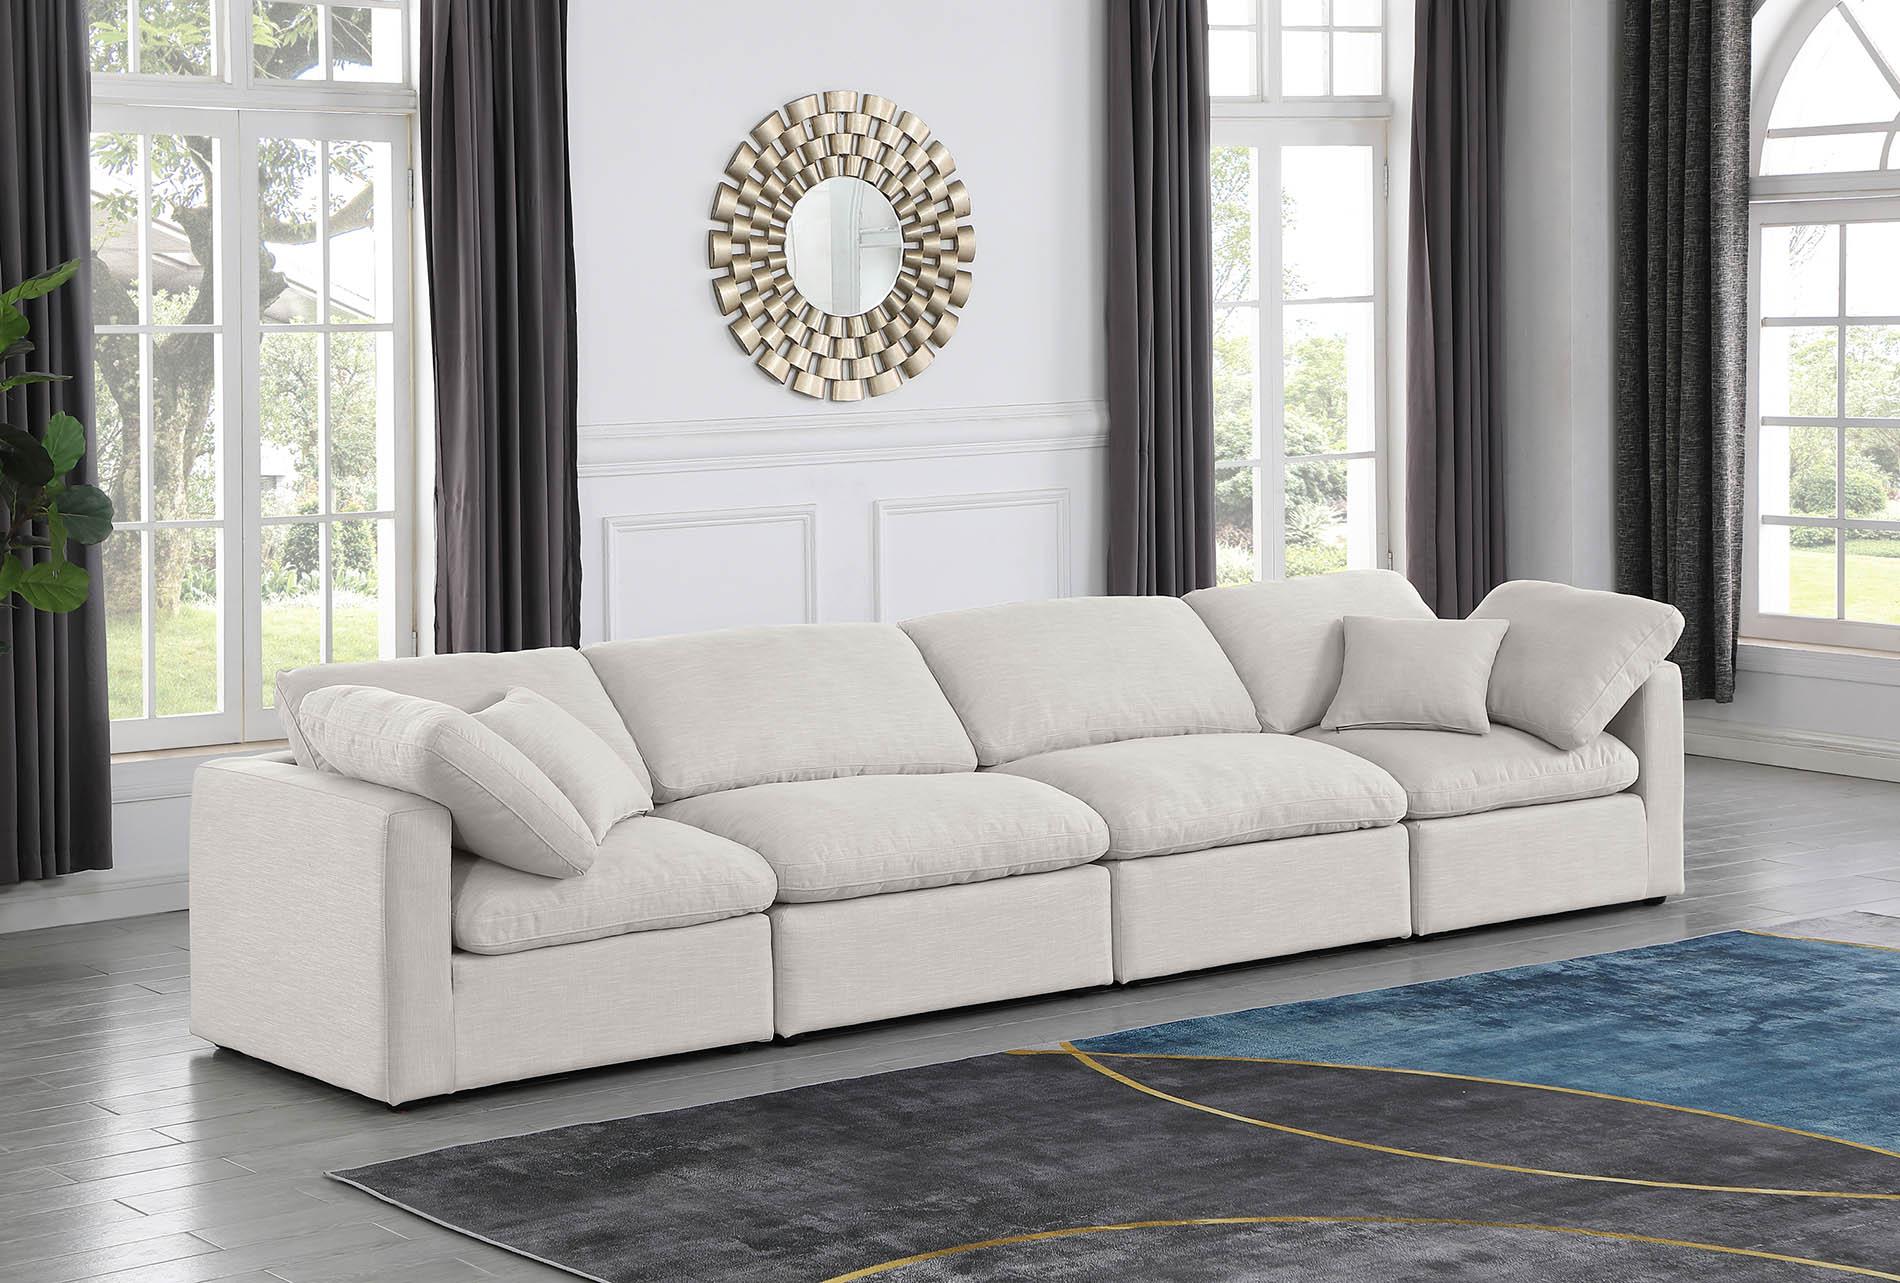 

    
Cream Linen Fabric Modular Sofa INDULGE 141Cream-S140 Meridian Contemporary
